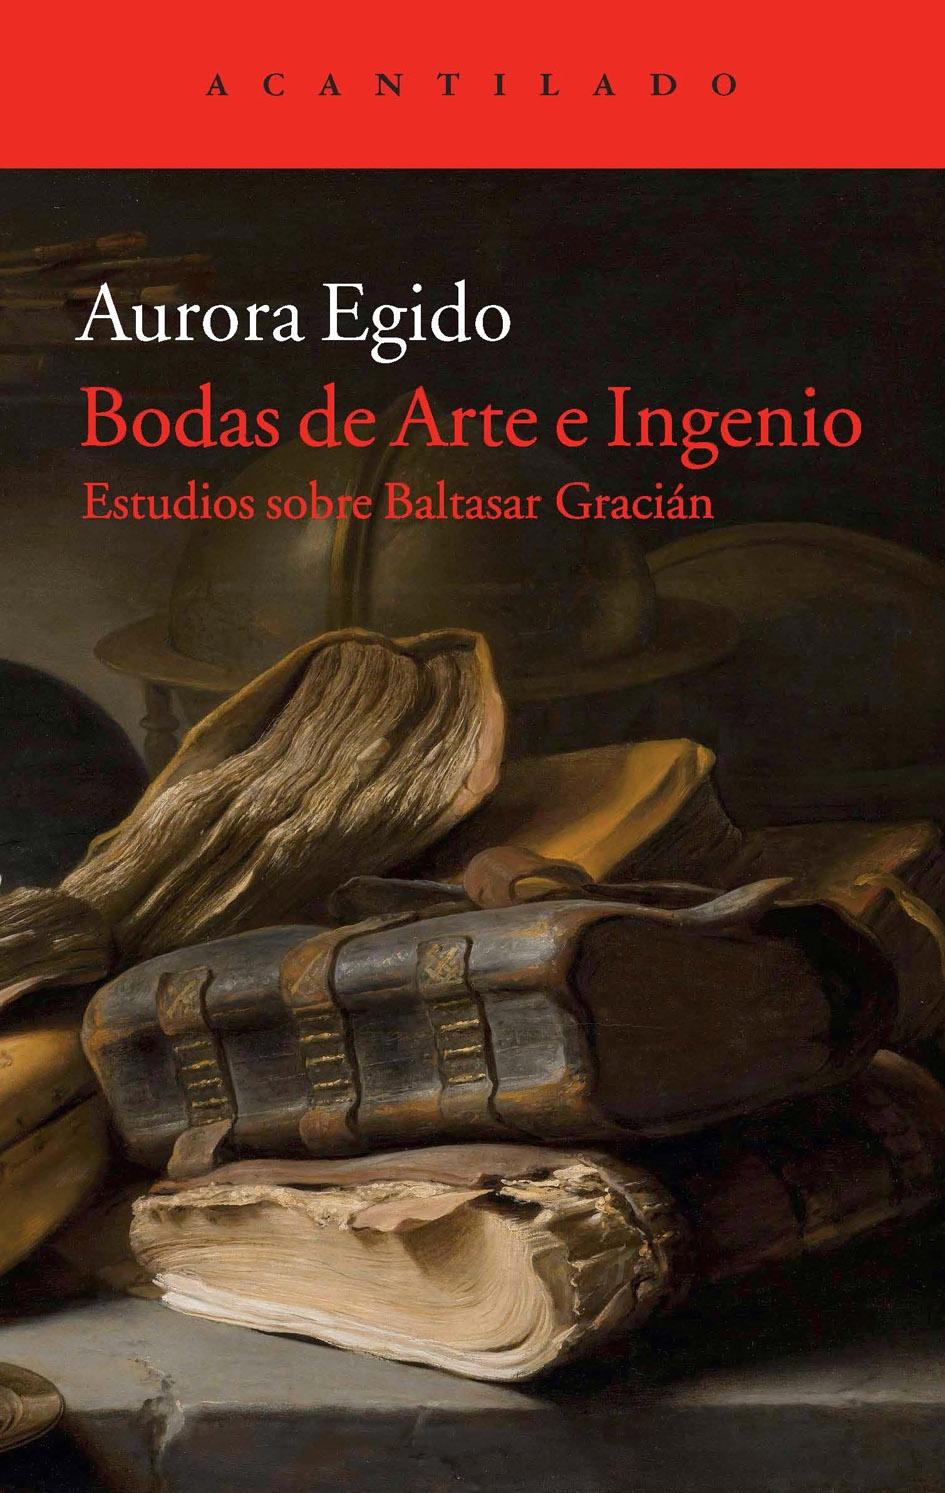 Bodas de Arte e Ingenio "Estudios sobre Baltasar Gracián". 